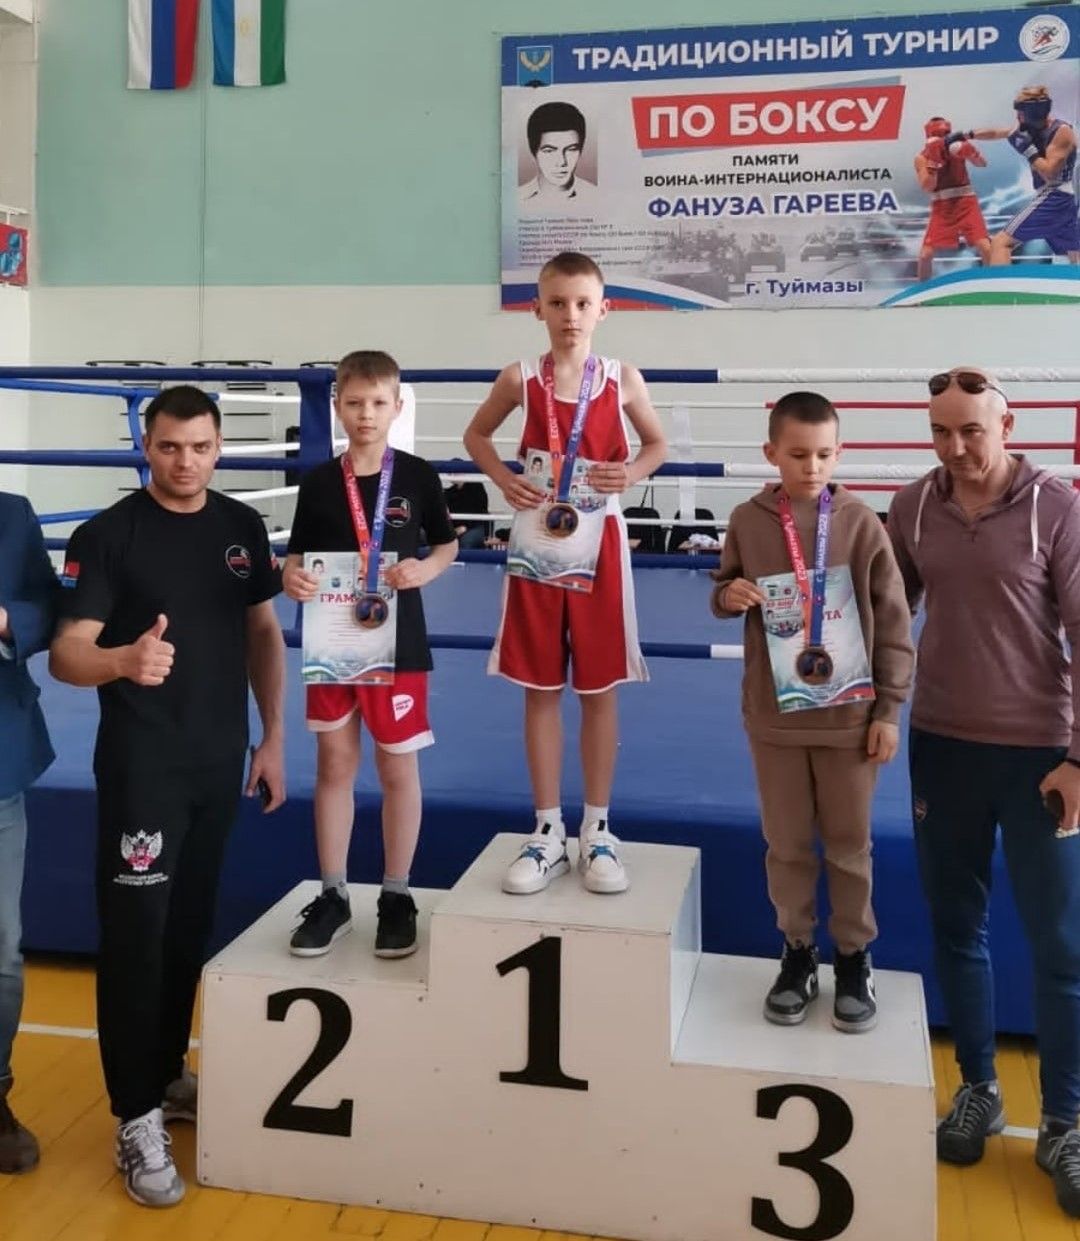 Спортсмены из Бугульмы заняли пьедестал в турнире по боксу памяти Фануза Гареева